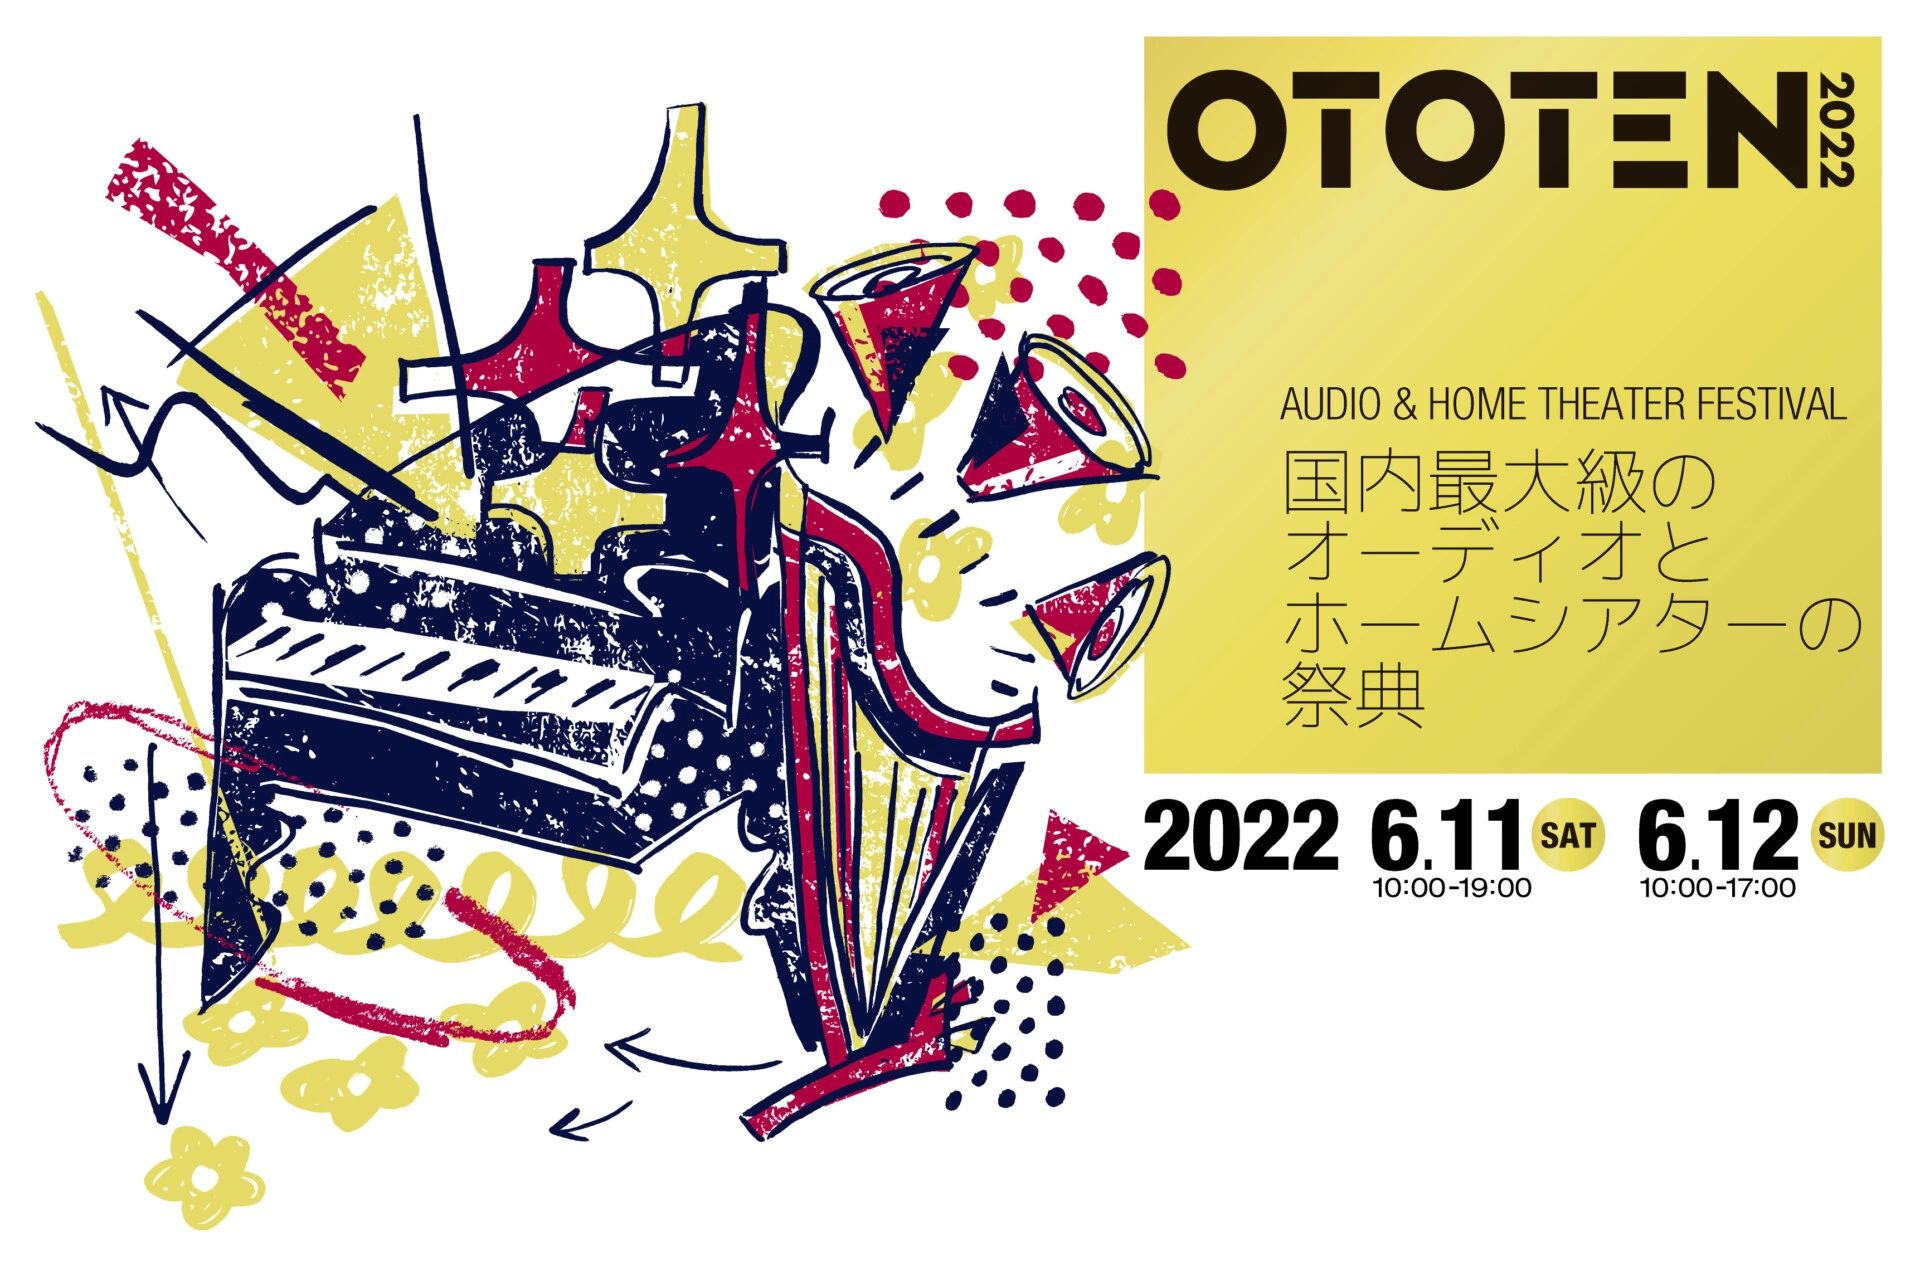 OTOTEN AUDIO & HOME THEATER FESTIVAL 2022